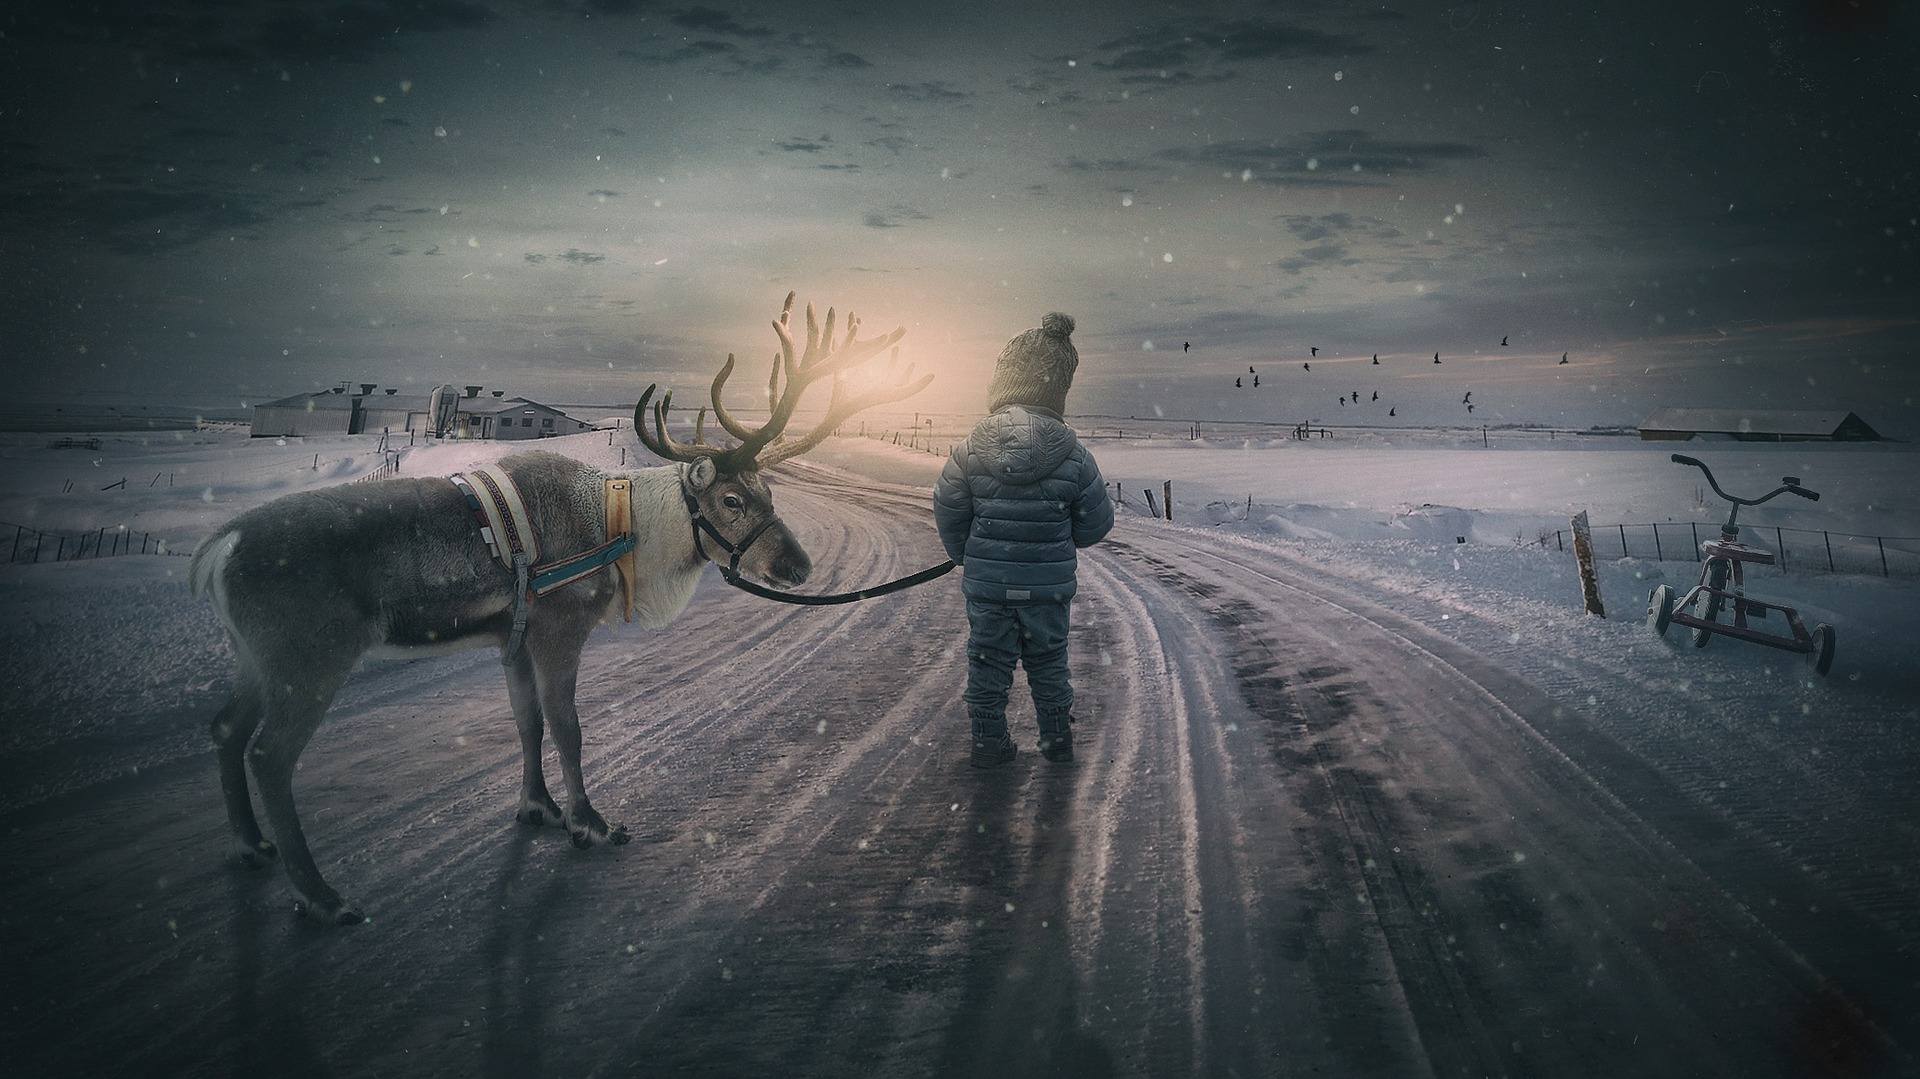 Le renne di Babbo Natale tra realtà e leggenda